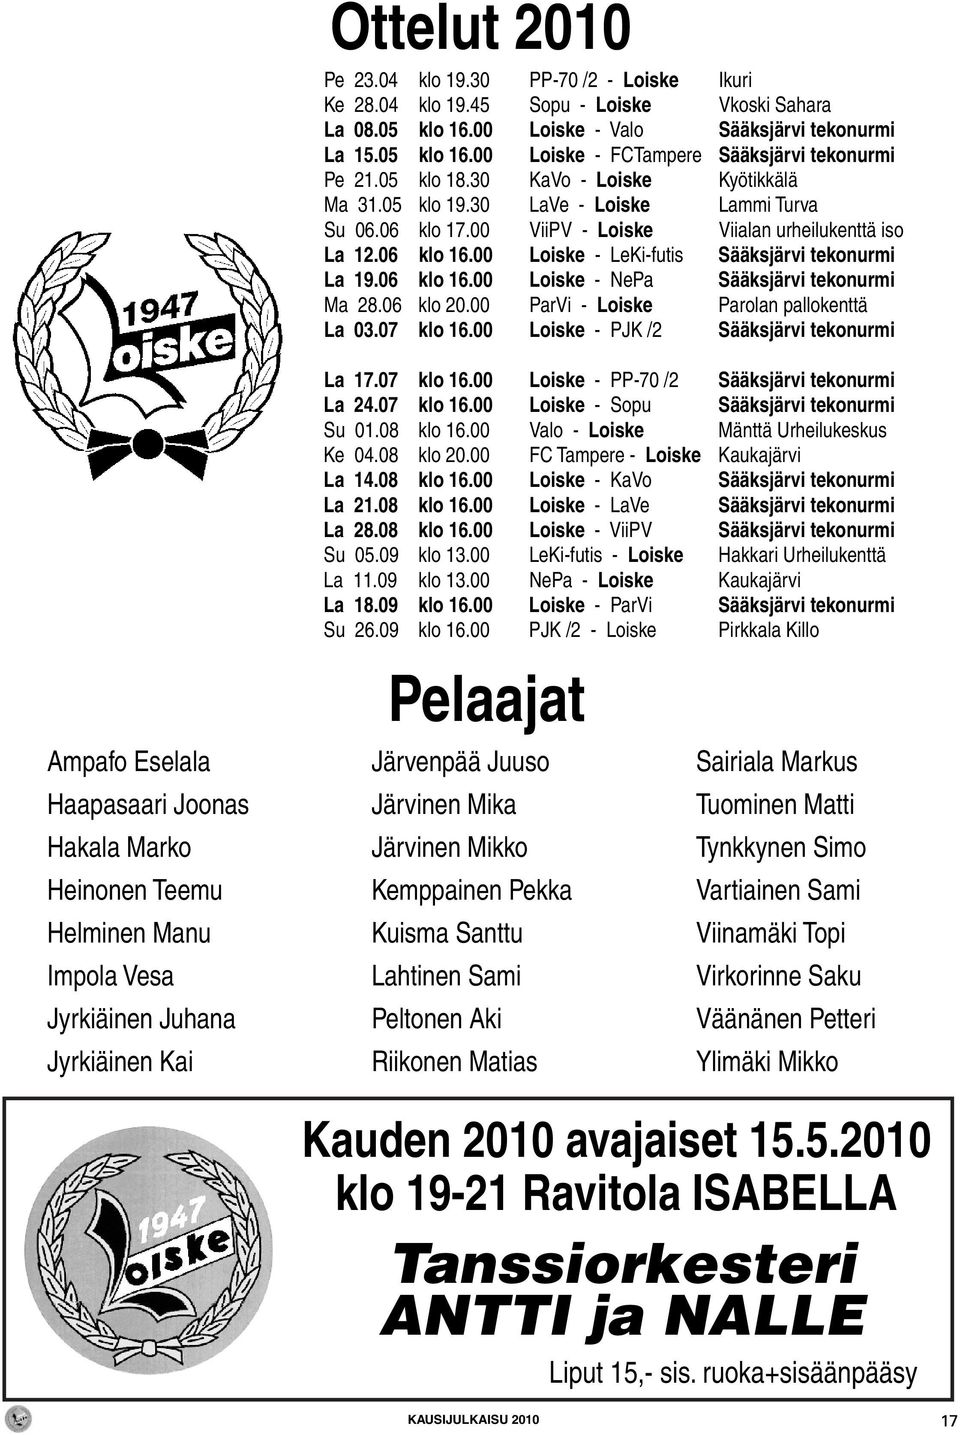 00 Loiske - LeKi-futis Sääksjärvi tekonurmi La 19.06 klo 16.00 Loiske - NePa Sääksjärvi tekonurmi Ma 28.06 klo 20.00 ParVi - Loiske Parolan pallokenttä La 03.07 klo 16.